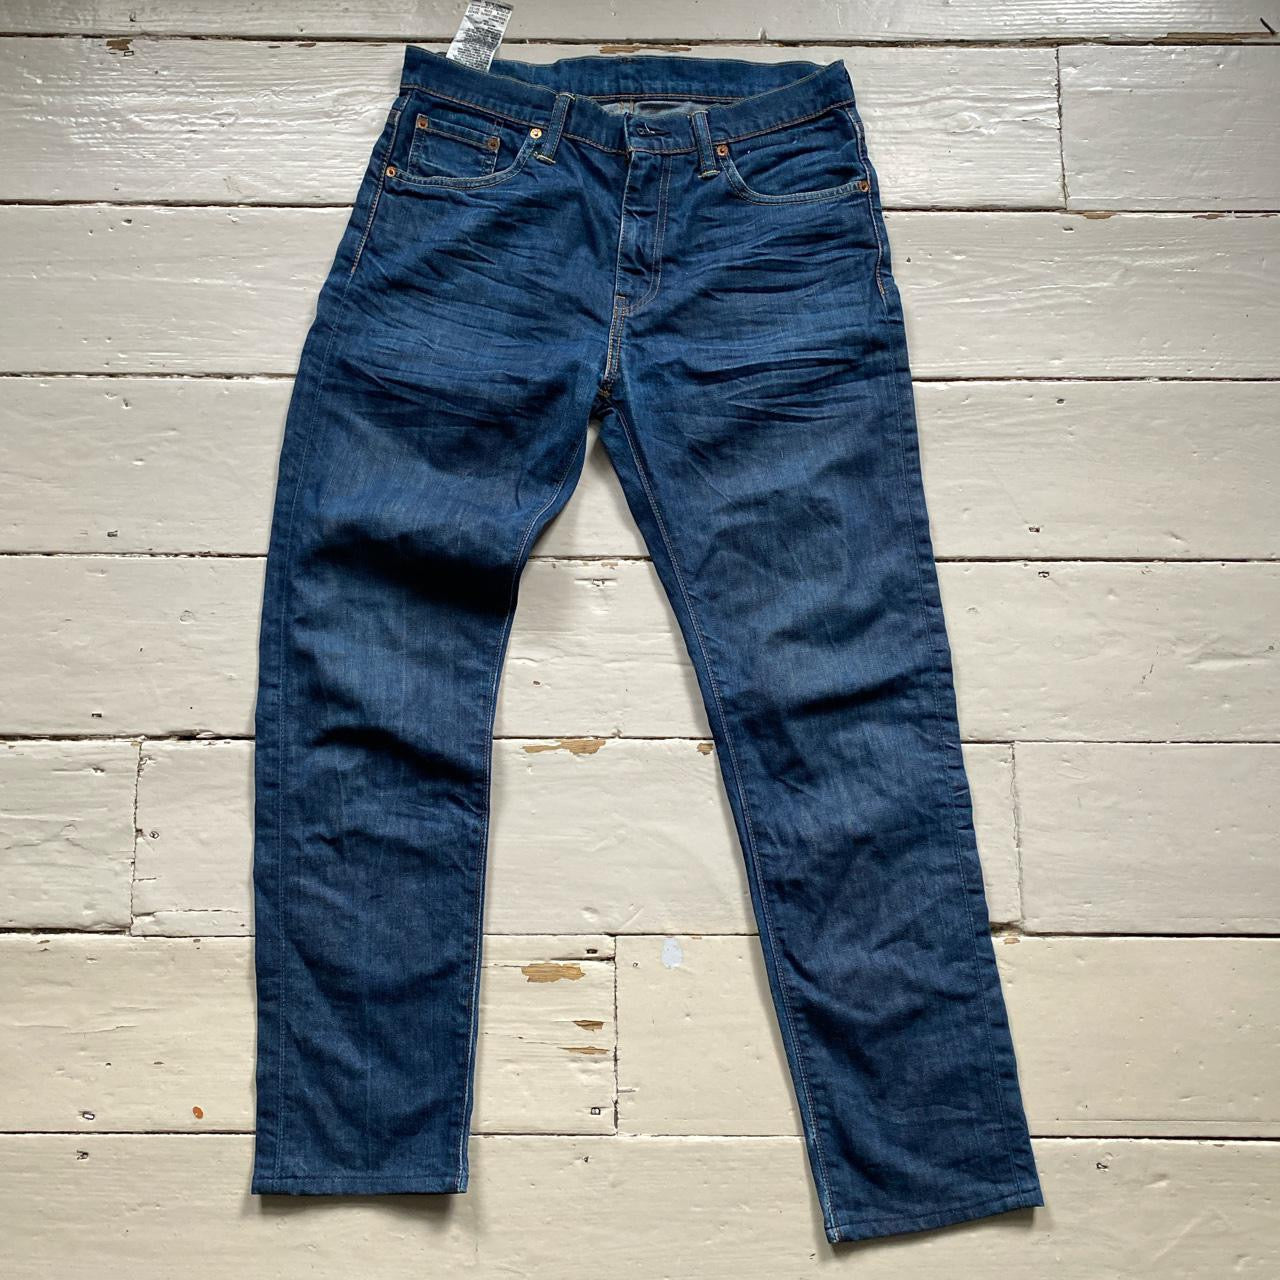 Levis 508 Slim Fit Jeans (30/28)